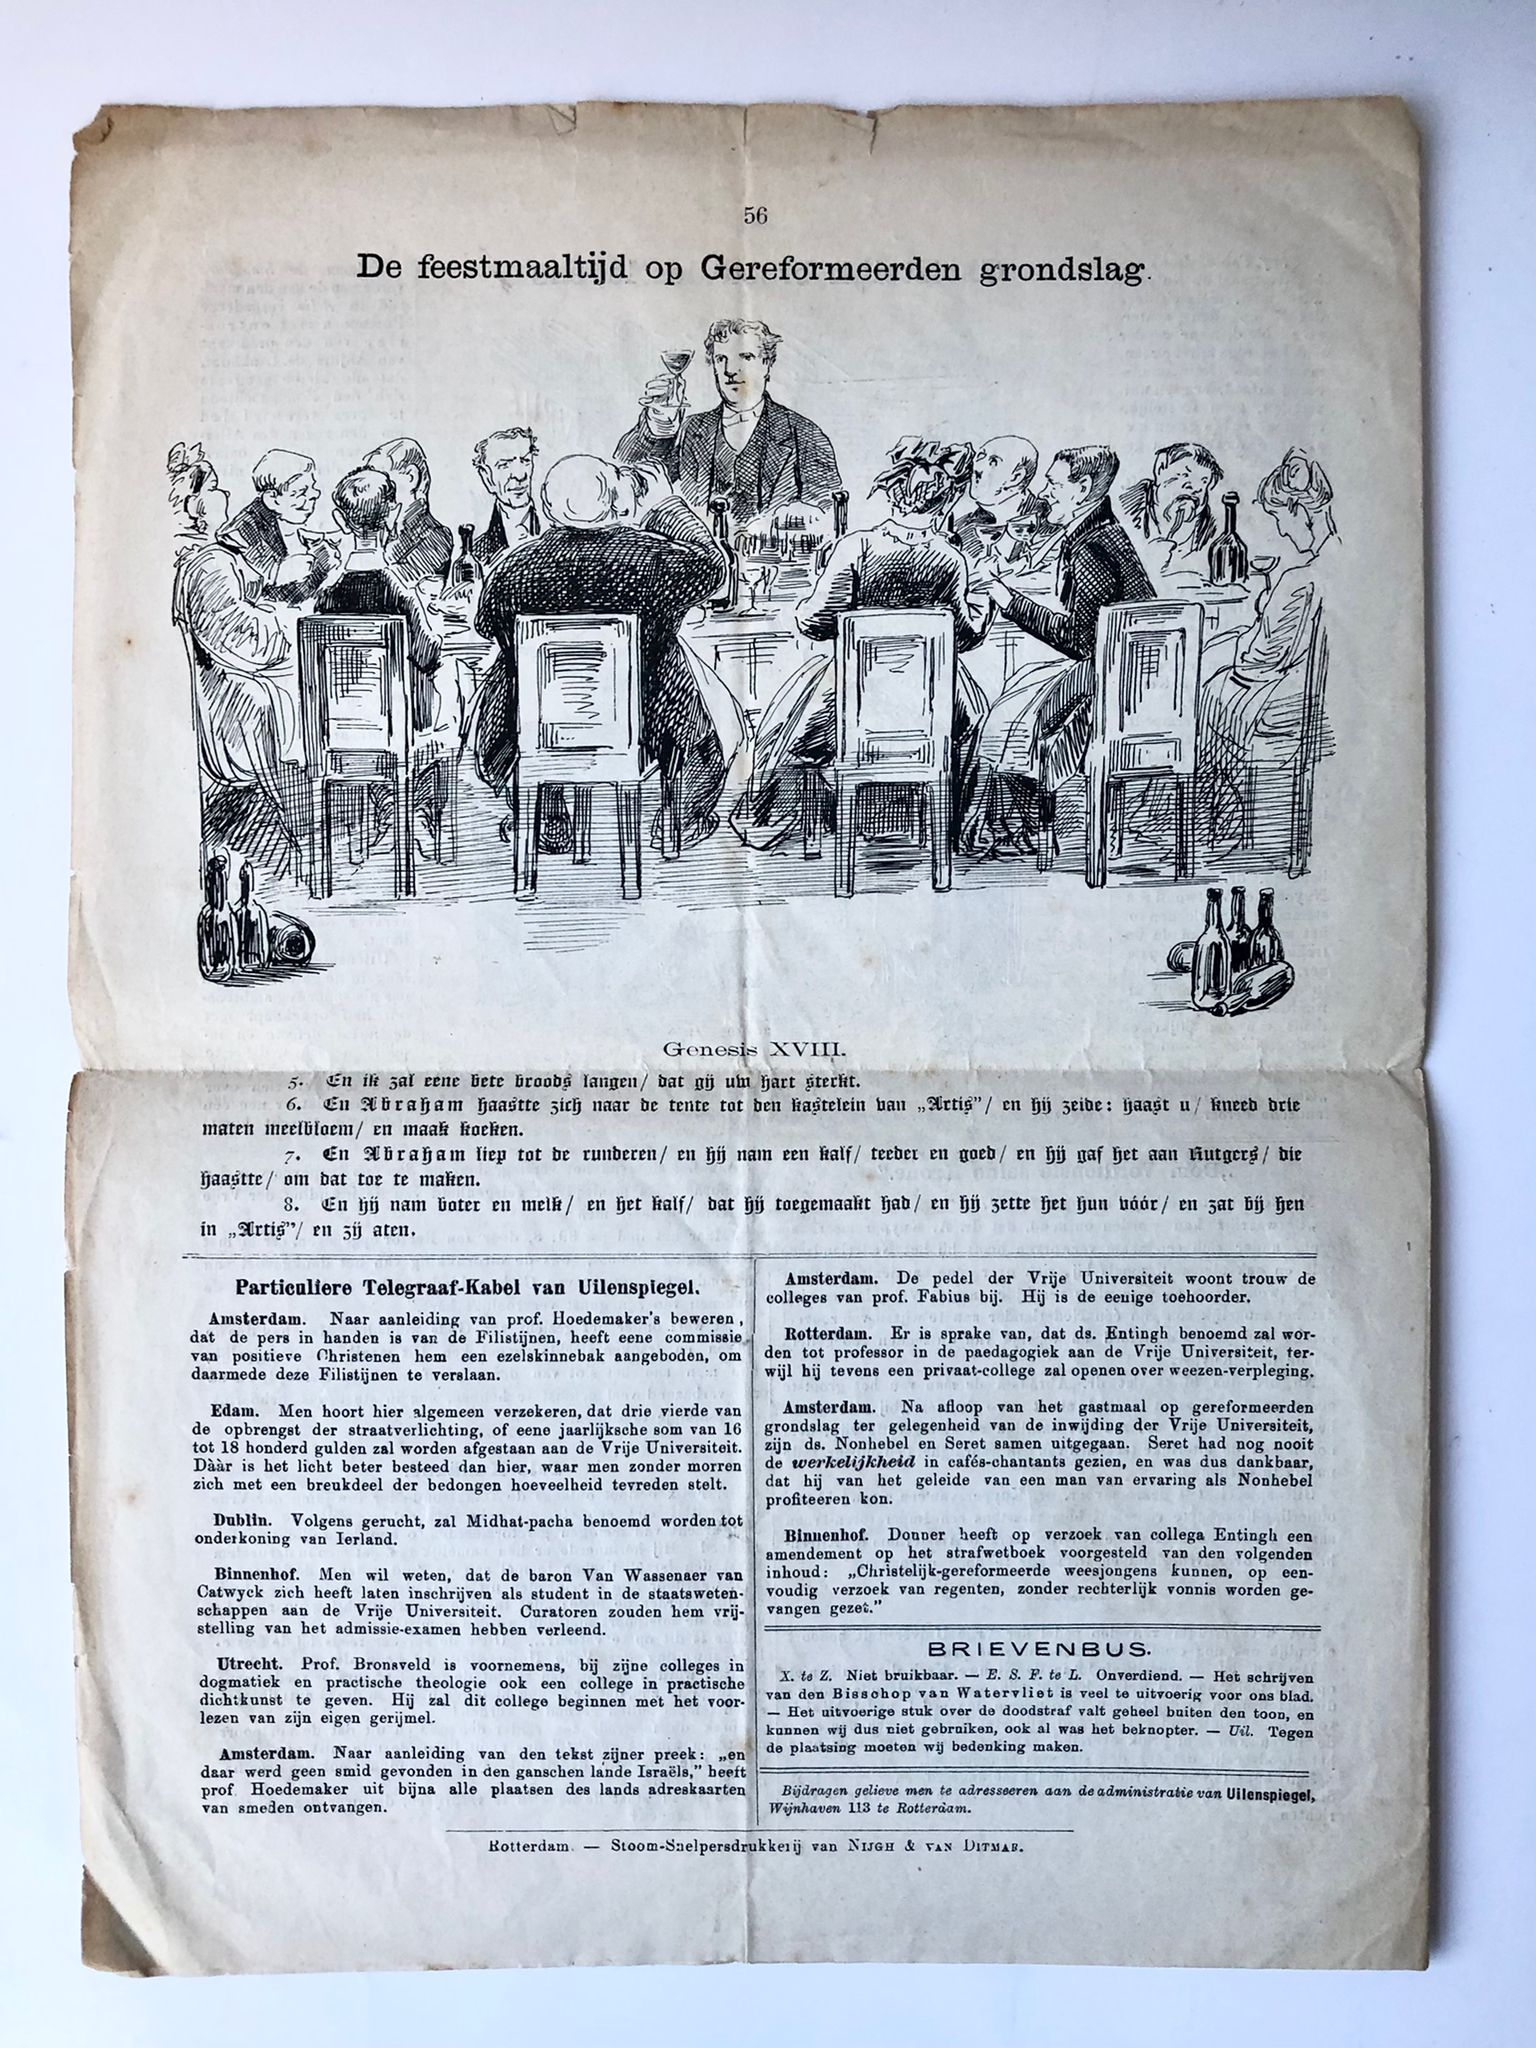 [Magazine university, Vrije Universiteit (VU) Amsterdam, satirical, 1880] Inwijding der Vrije Universiteit. Afl. van Uilenspiegel 30-10-1880. 4°, 4 pp. Printed.